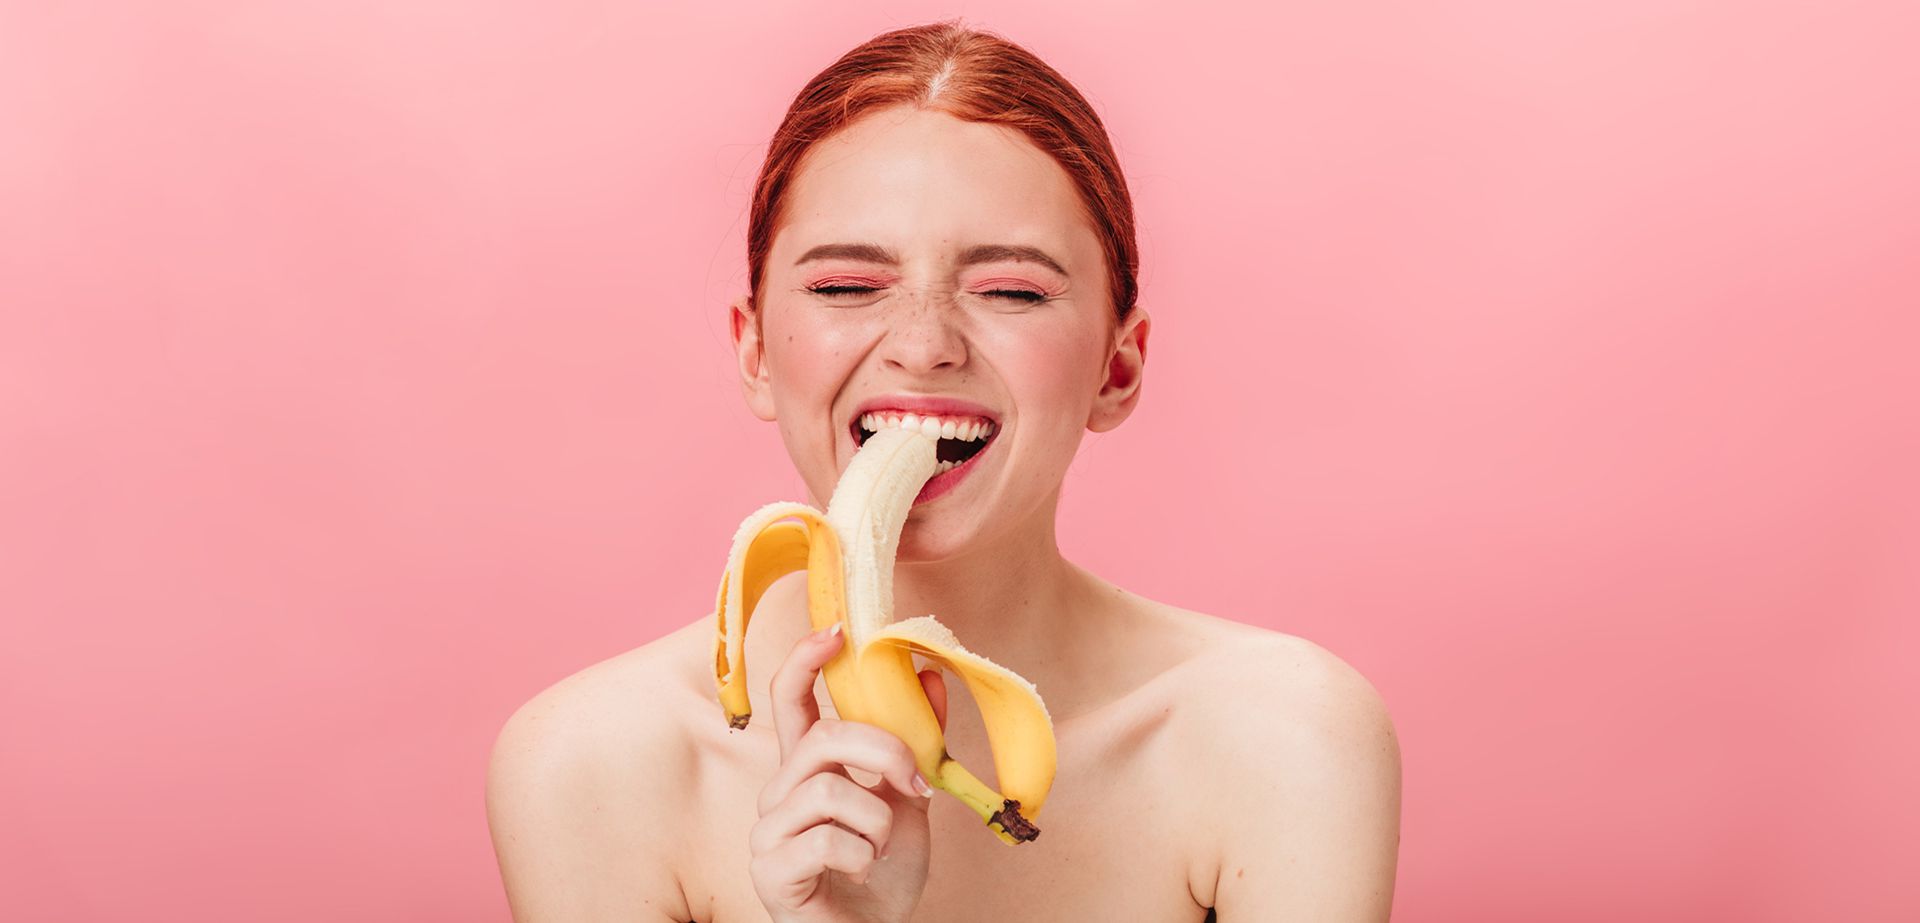 Woman with banana.